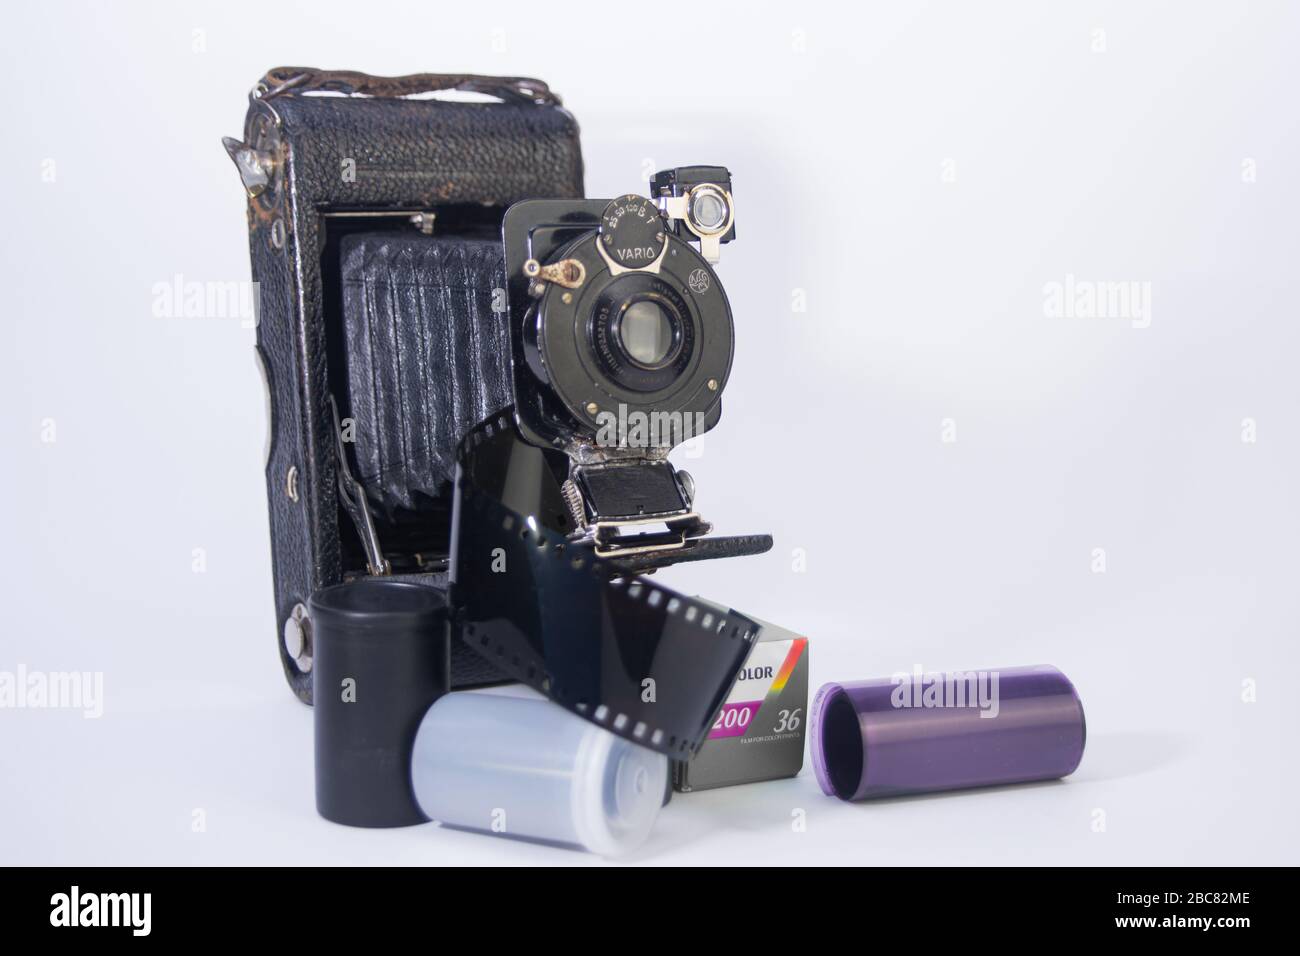 vecchia scuola fotocamera da 35 mm, e obiettivi per fotocamera con contenitori di pellicola e nastri di pellicola intorno isolato su sfondo bianco Foto Stock